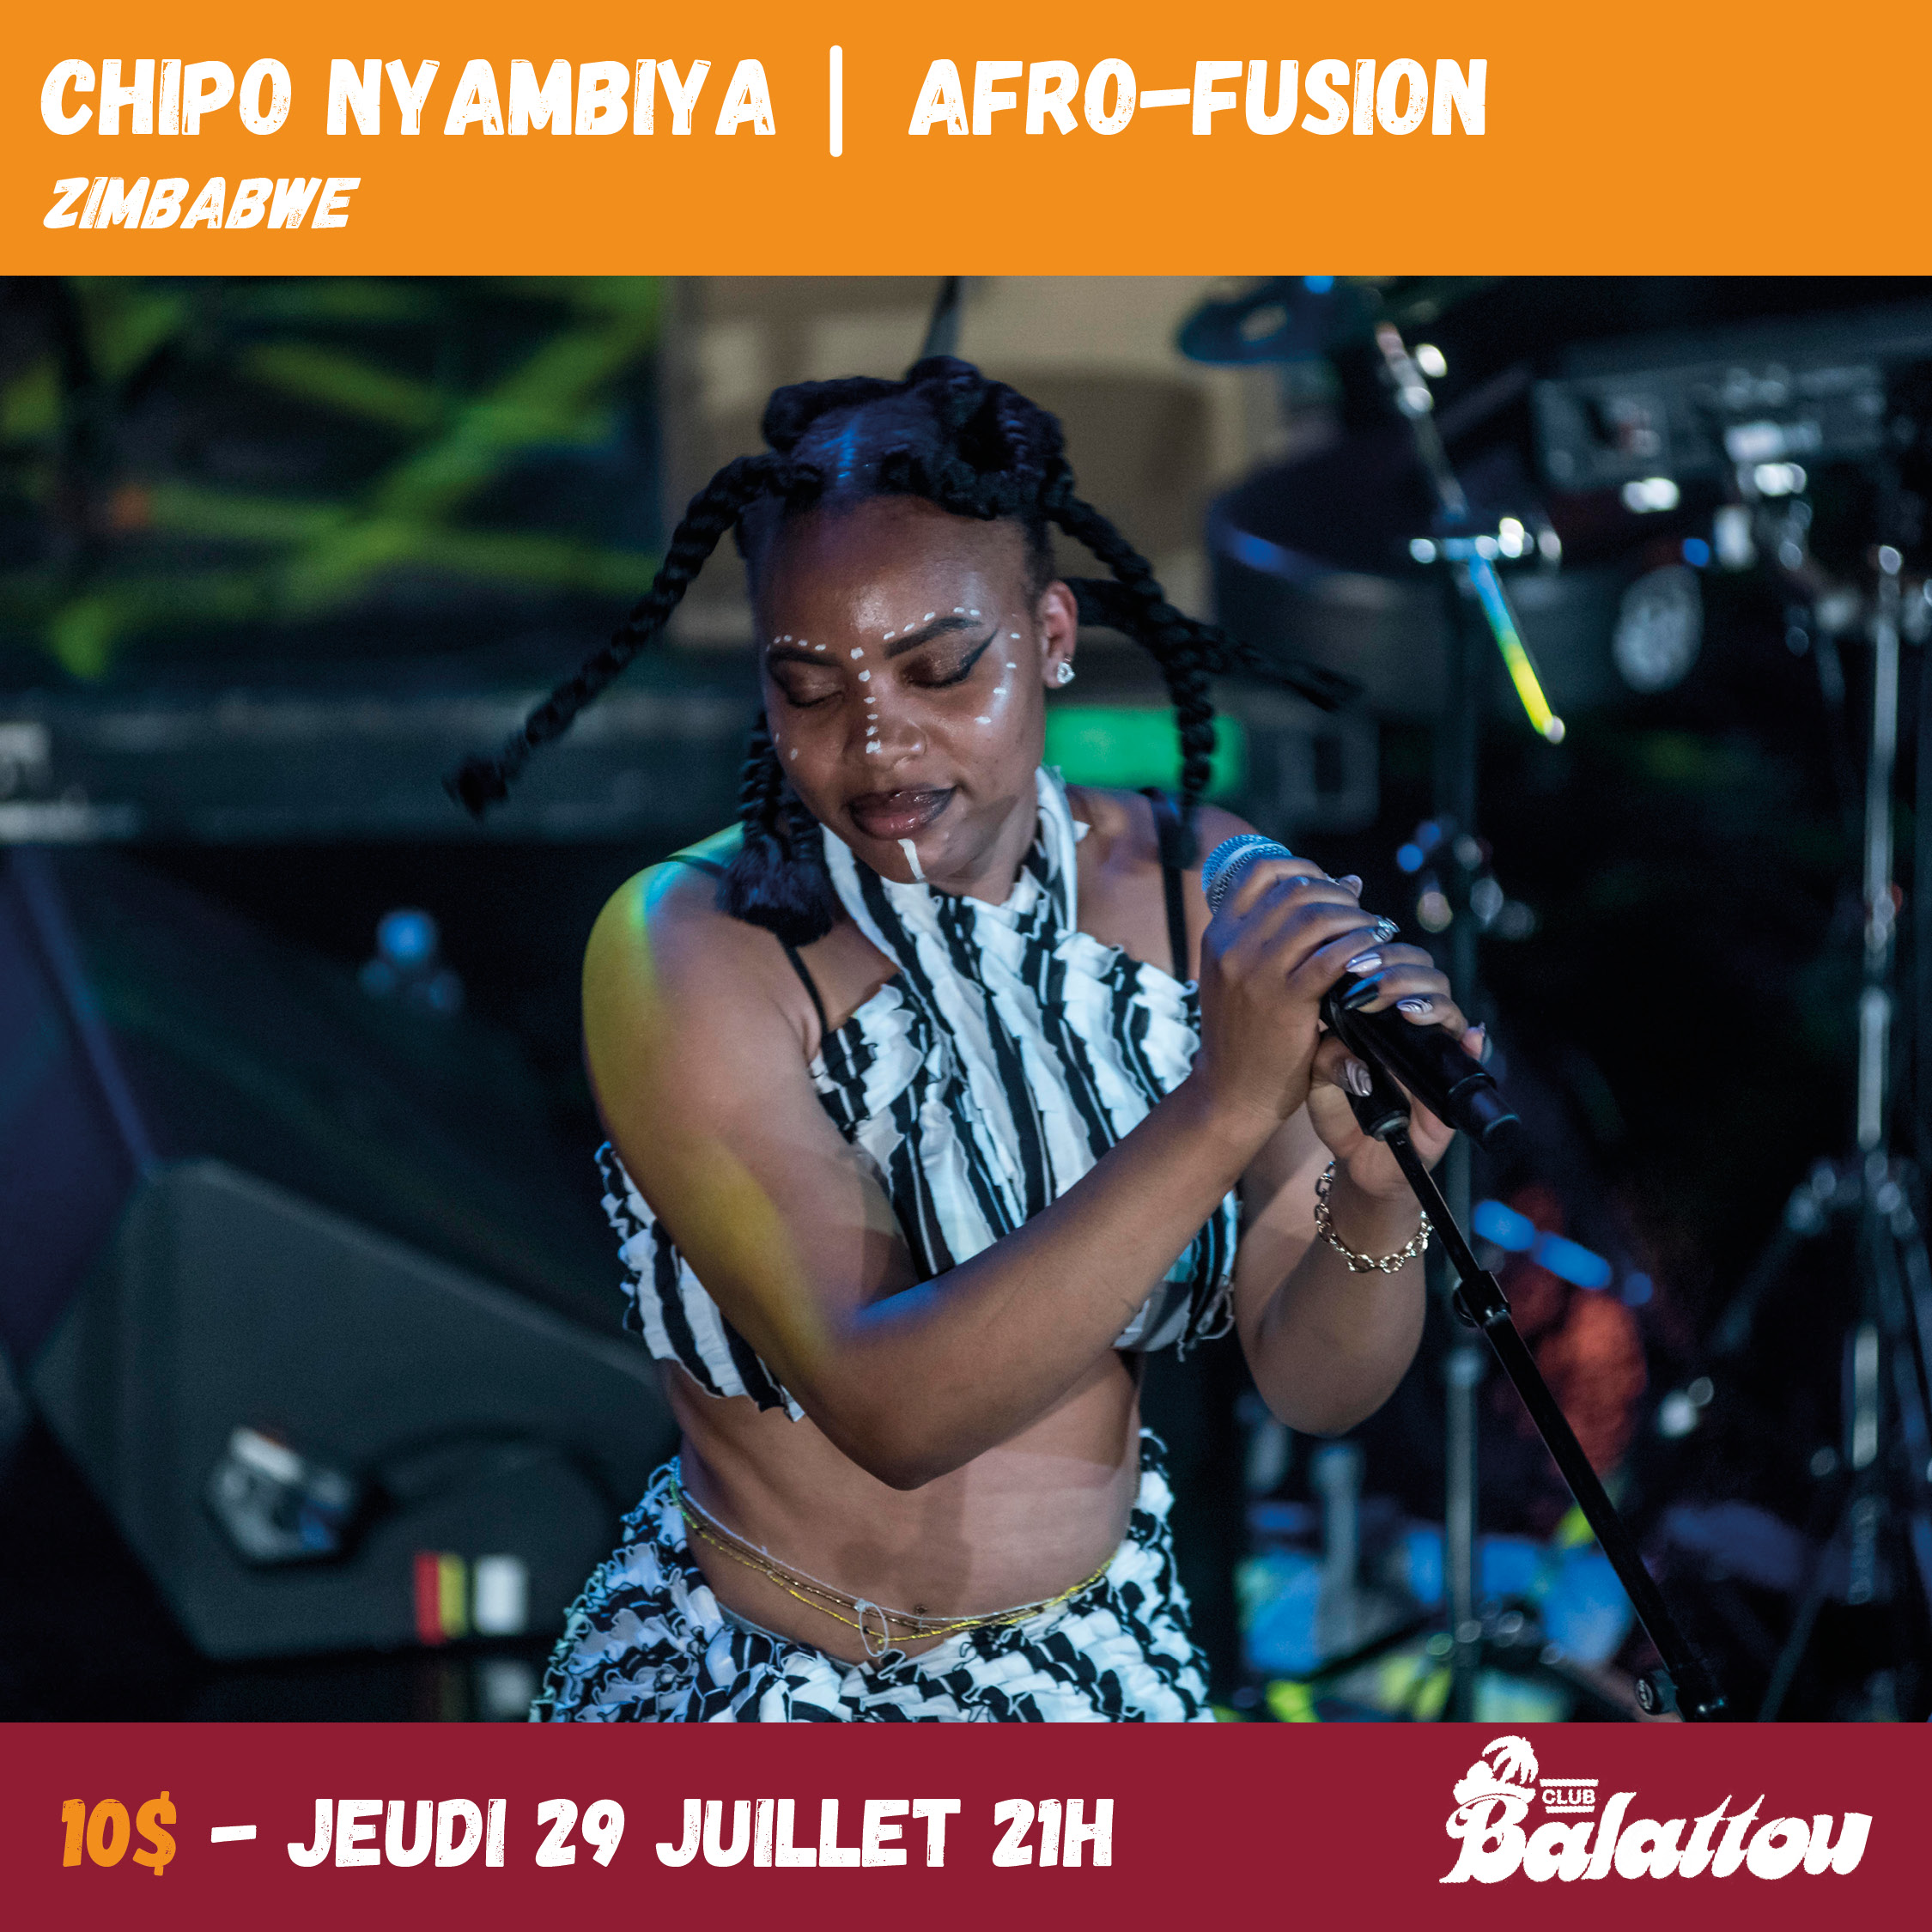 Chipo Nyambiya (Zimbabwe) – Style : Afro-fusion